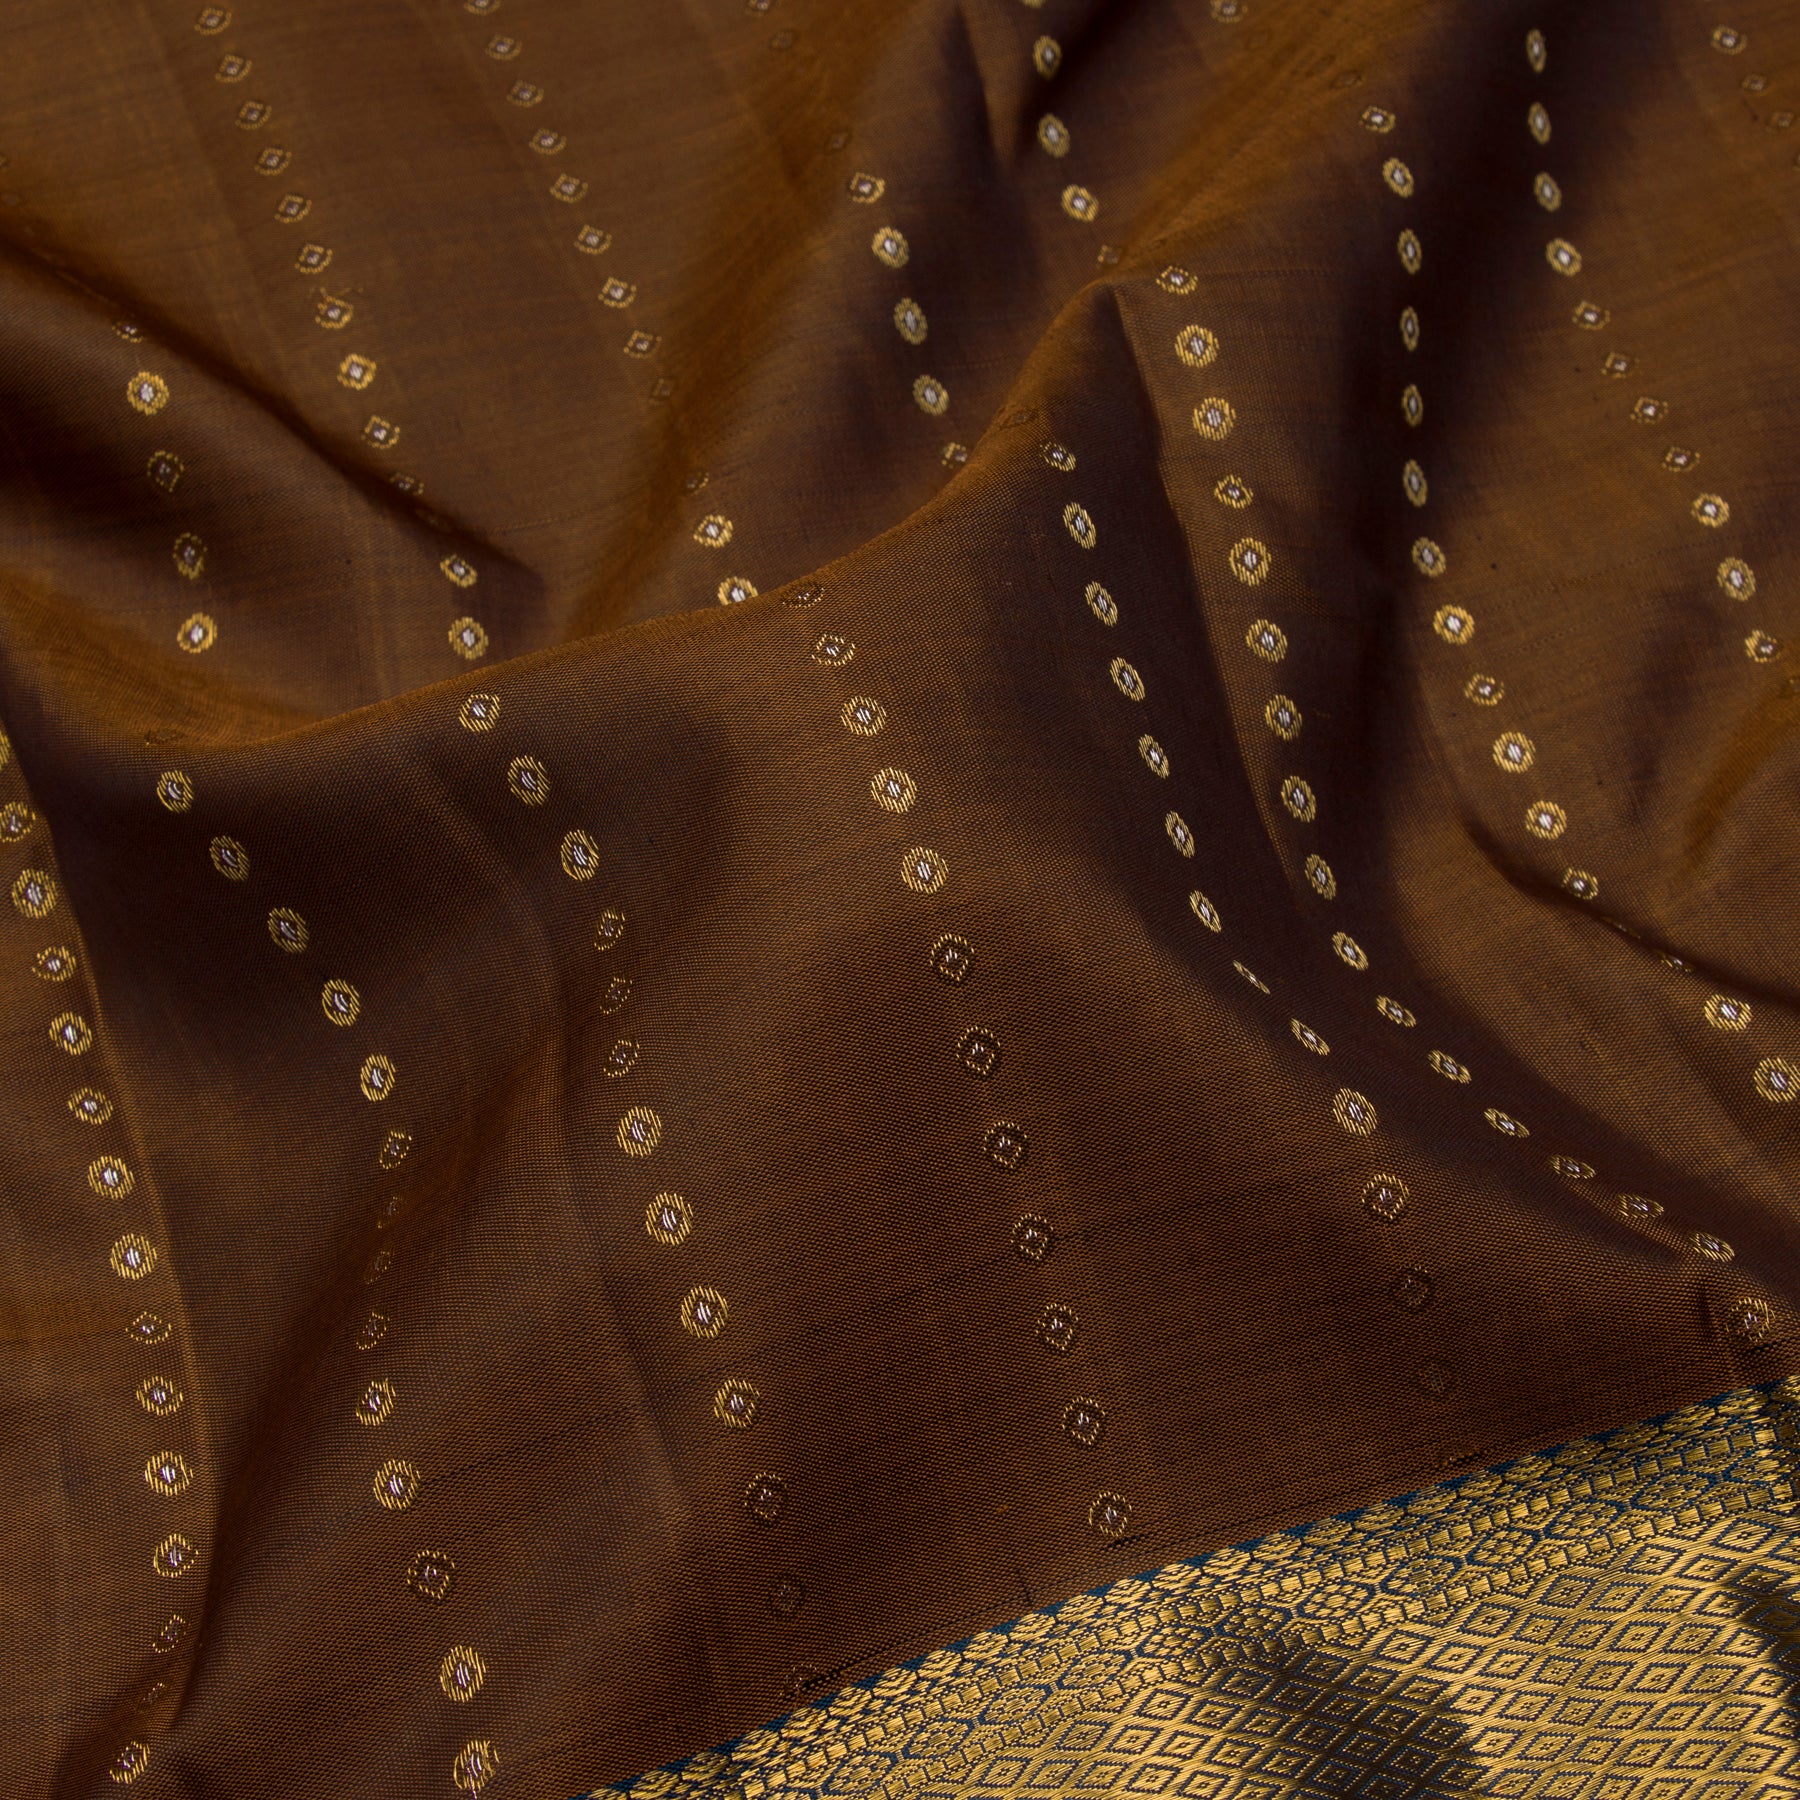 Kanakavalli Kanjivaram Silk Sari 23-611-HS001-06167 - Fabric View